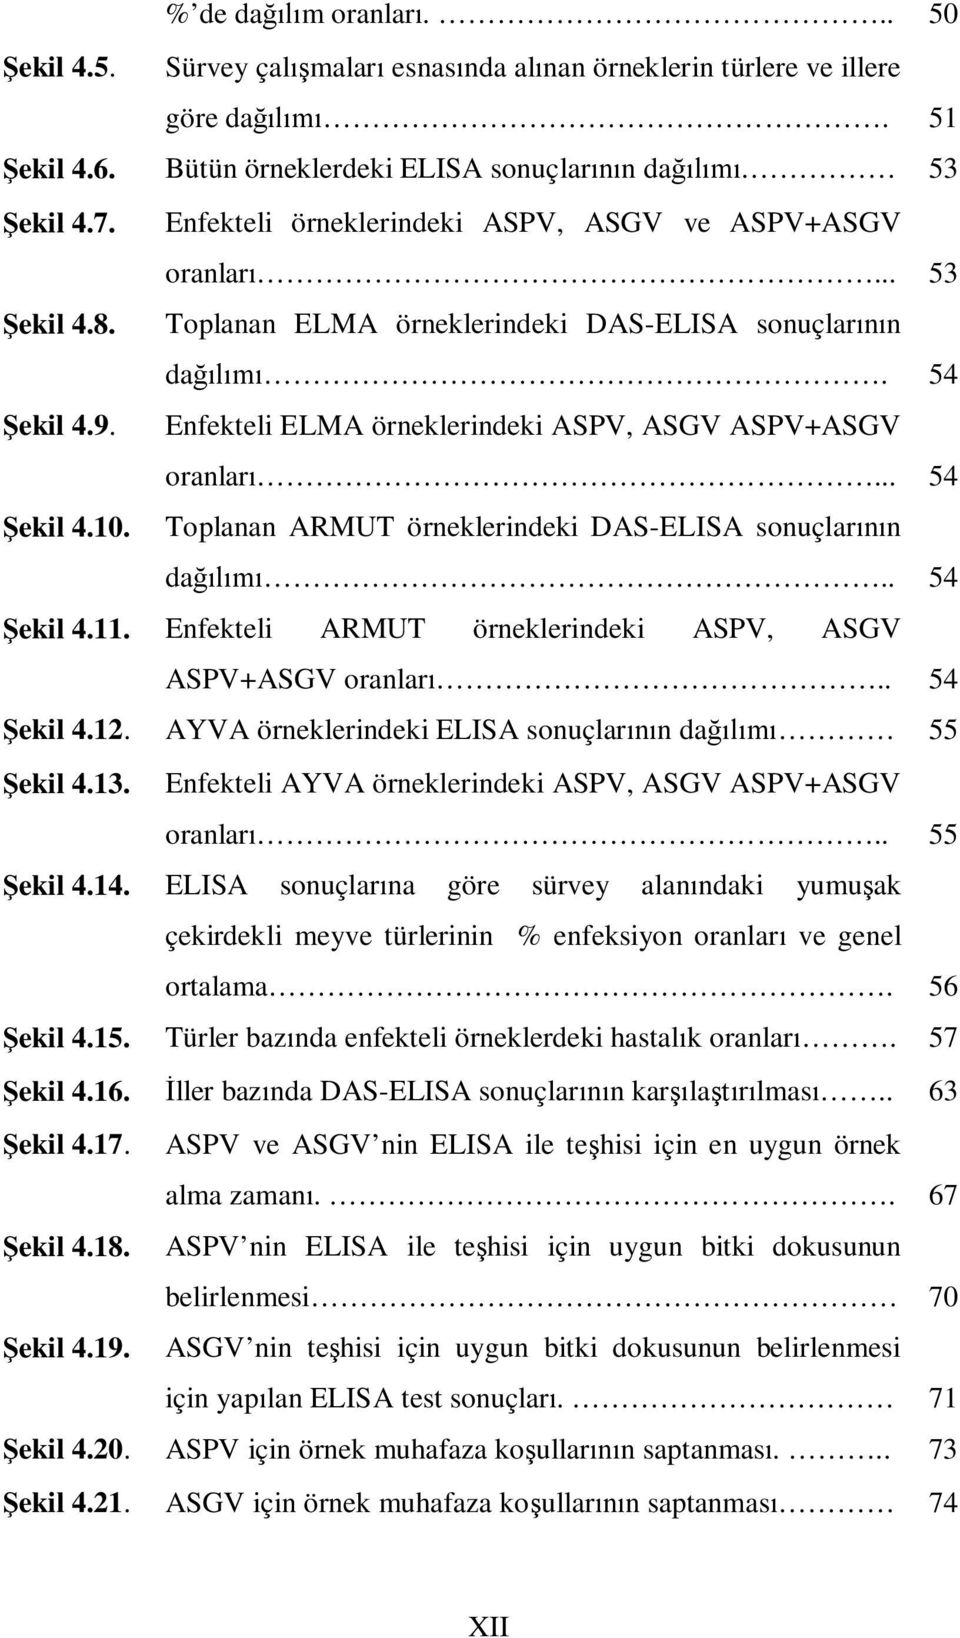 Enfekteli ELMA örneklerindeki ASPV, ASGV ASPV+ASGV oranları... 54 Şekil 4.10. Toplanan ARMUT örneklerindeki DAS-ELISA sonuçlarının dağılımı.. 54 Şekil 4.11.